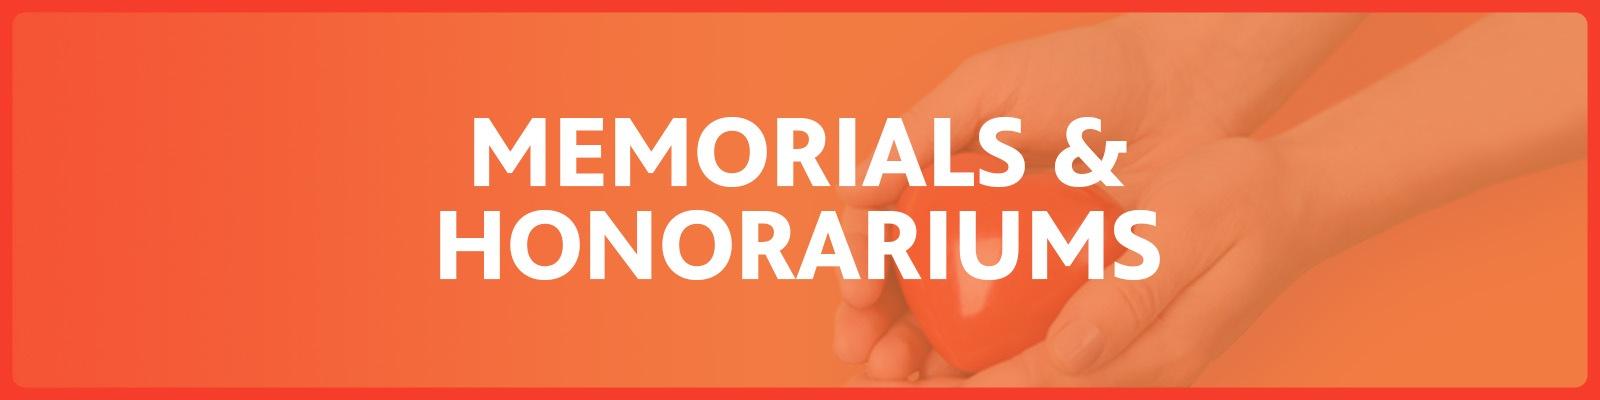 Memorials and Honorariums